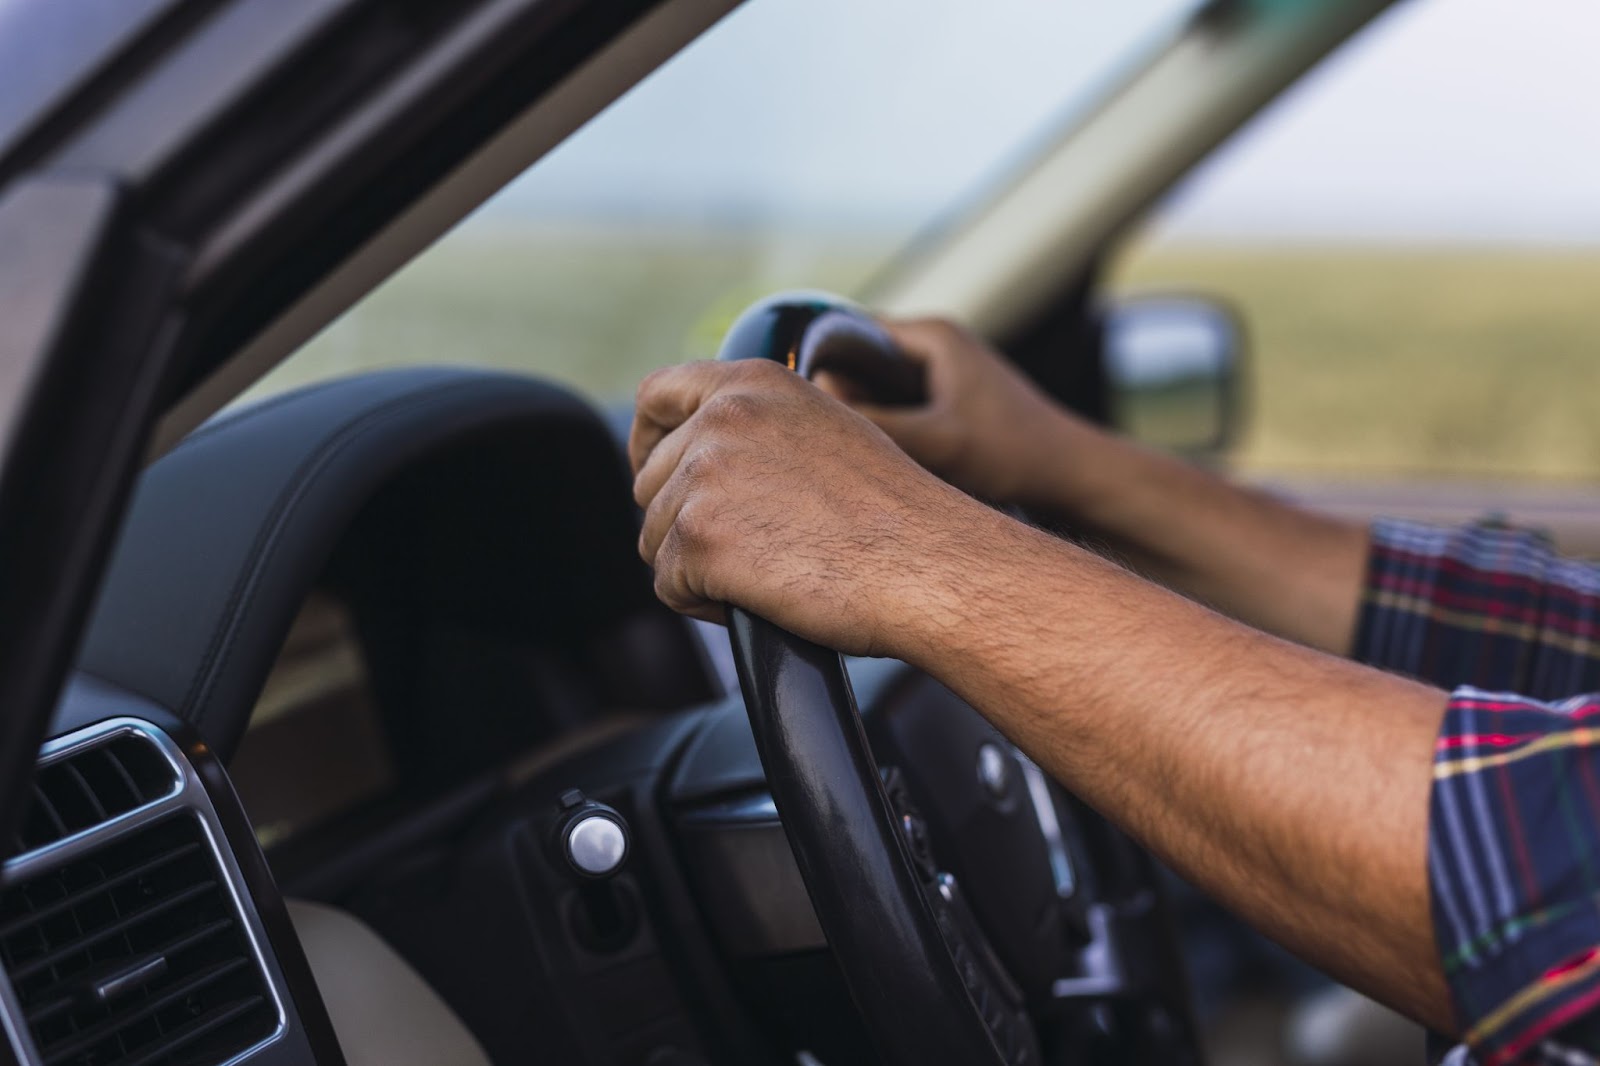 Imagem em foco próximo das mãos de um condutor segurando o volante de um automóvel equipado com um sistema de suspensão, capturada durante o dia.